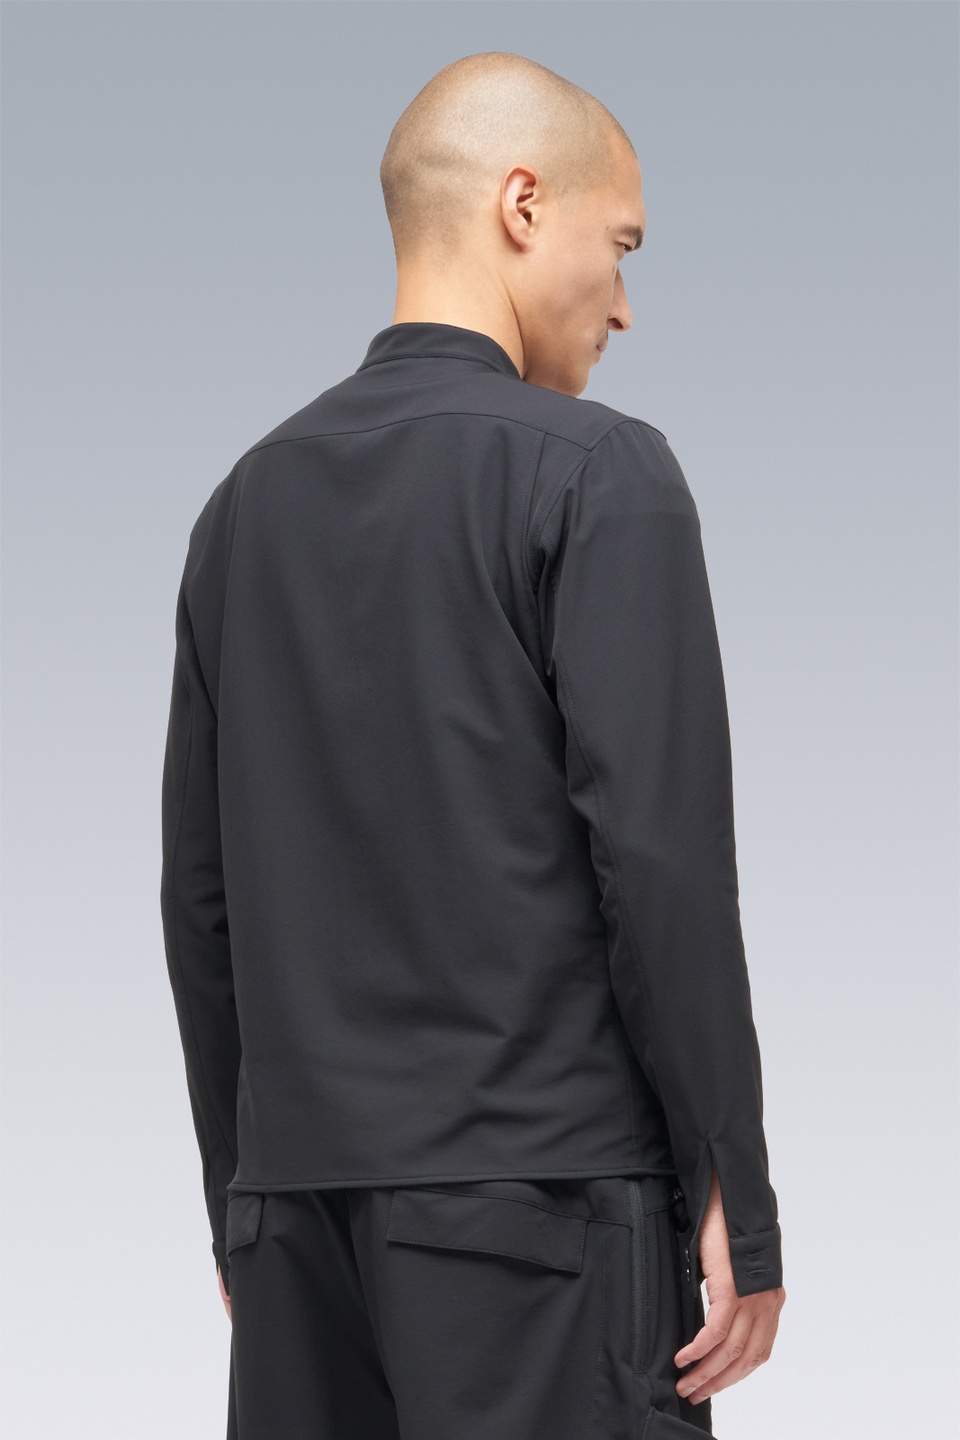 LA6B-DS schoeller® Dryskin™ Long Sleeve Shirt Schwarzrot - 22